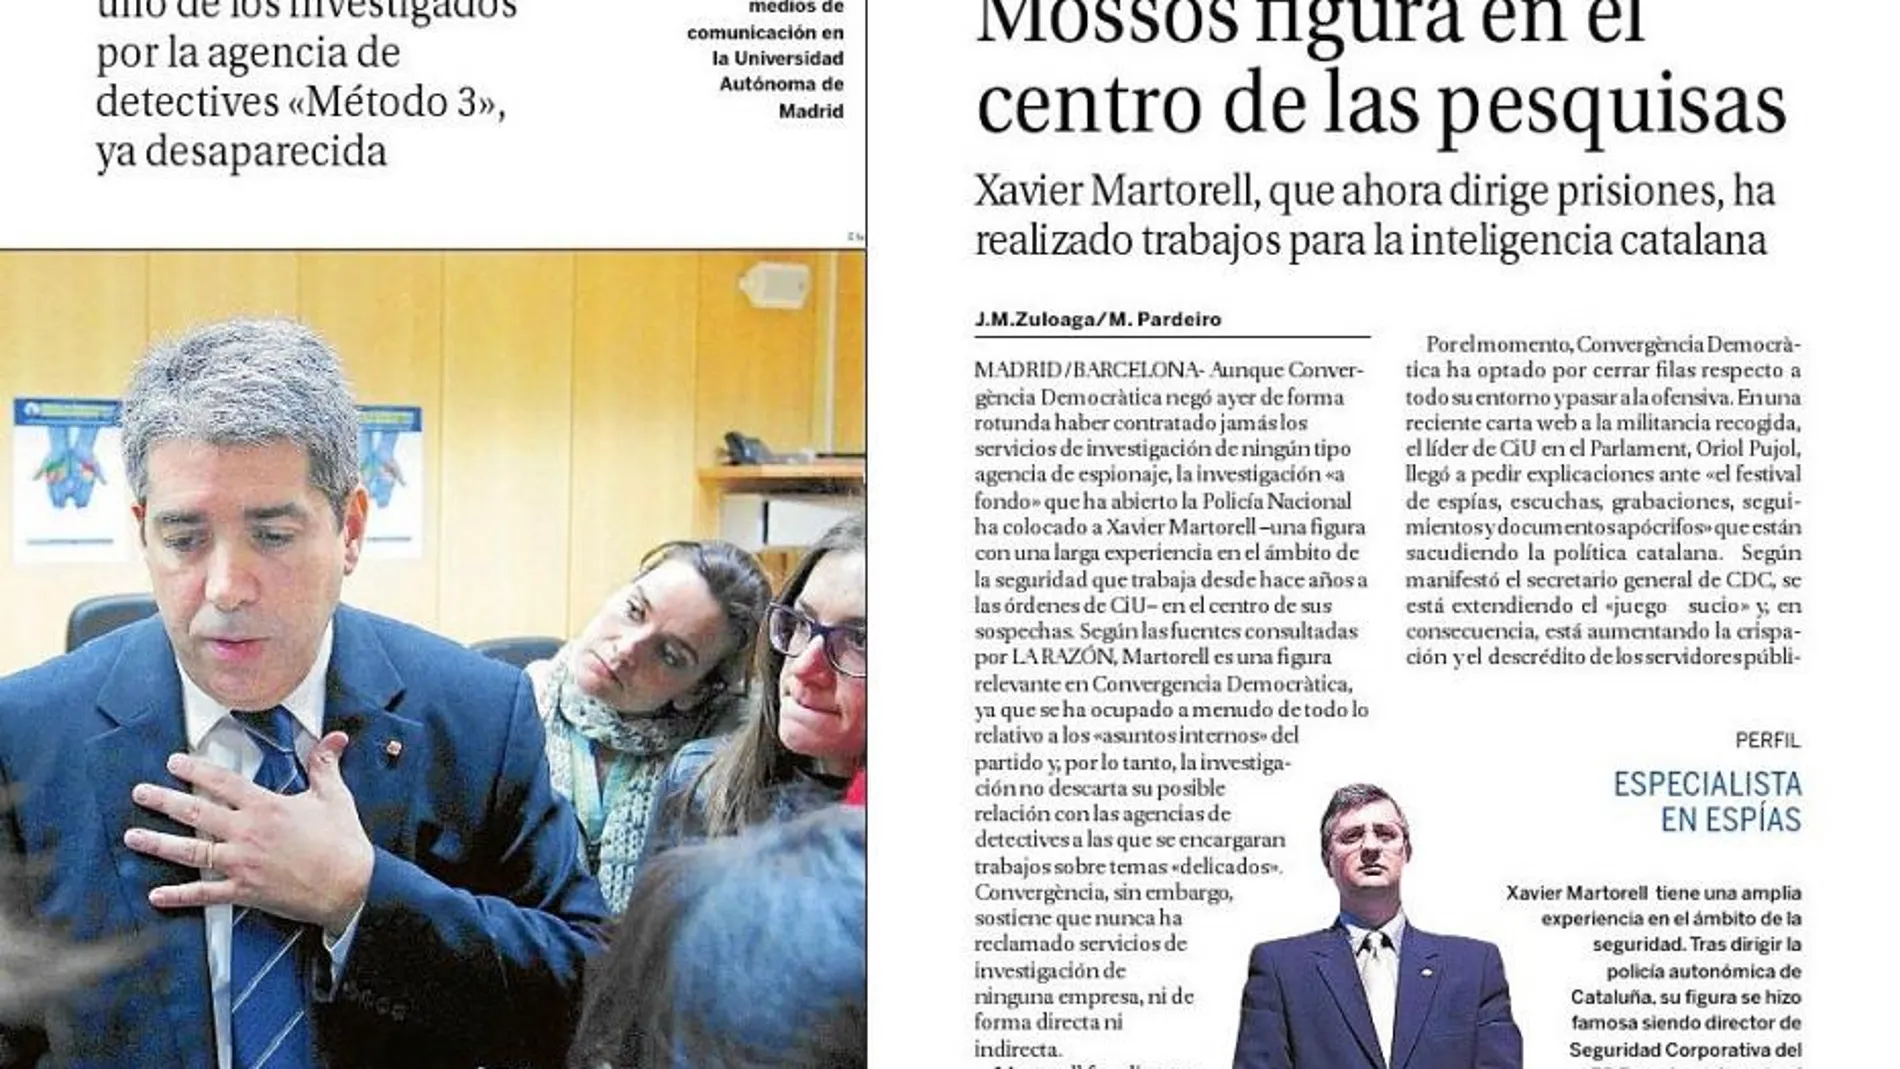 LA RAZÓN ya adelantó que el consejero Felip Puig podría haber sido investigado y la vinculación de Martorell con la agencia